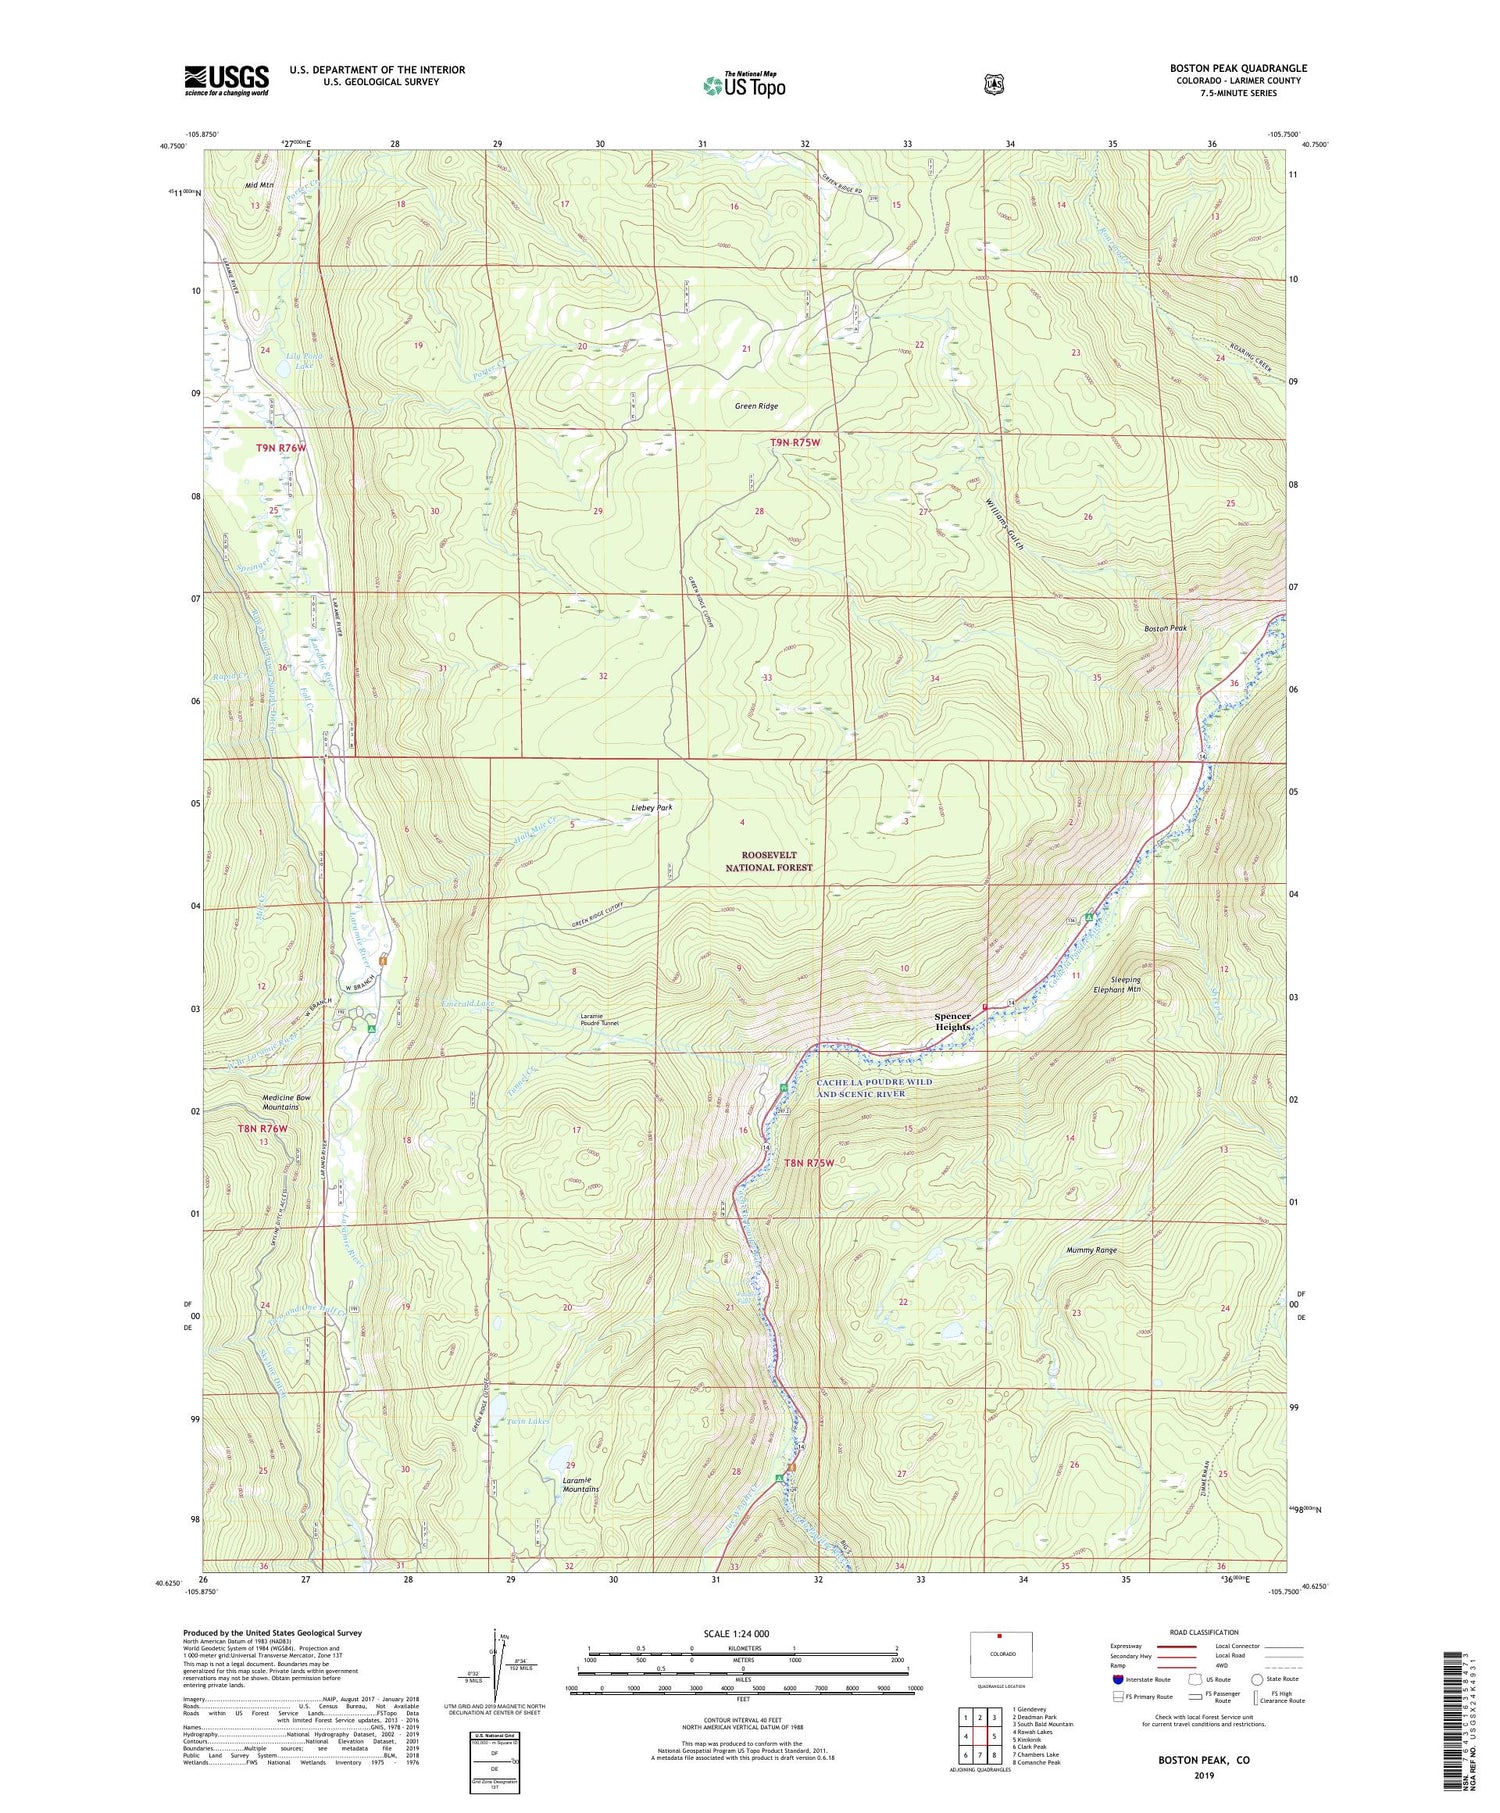 Boston Peak Colorado US Topo Map Image